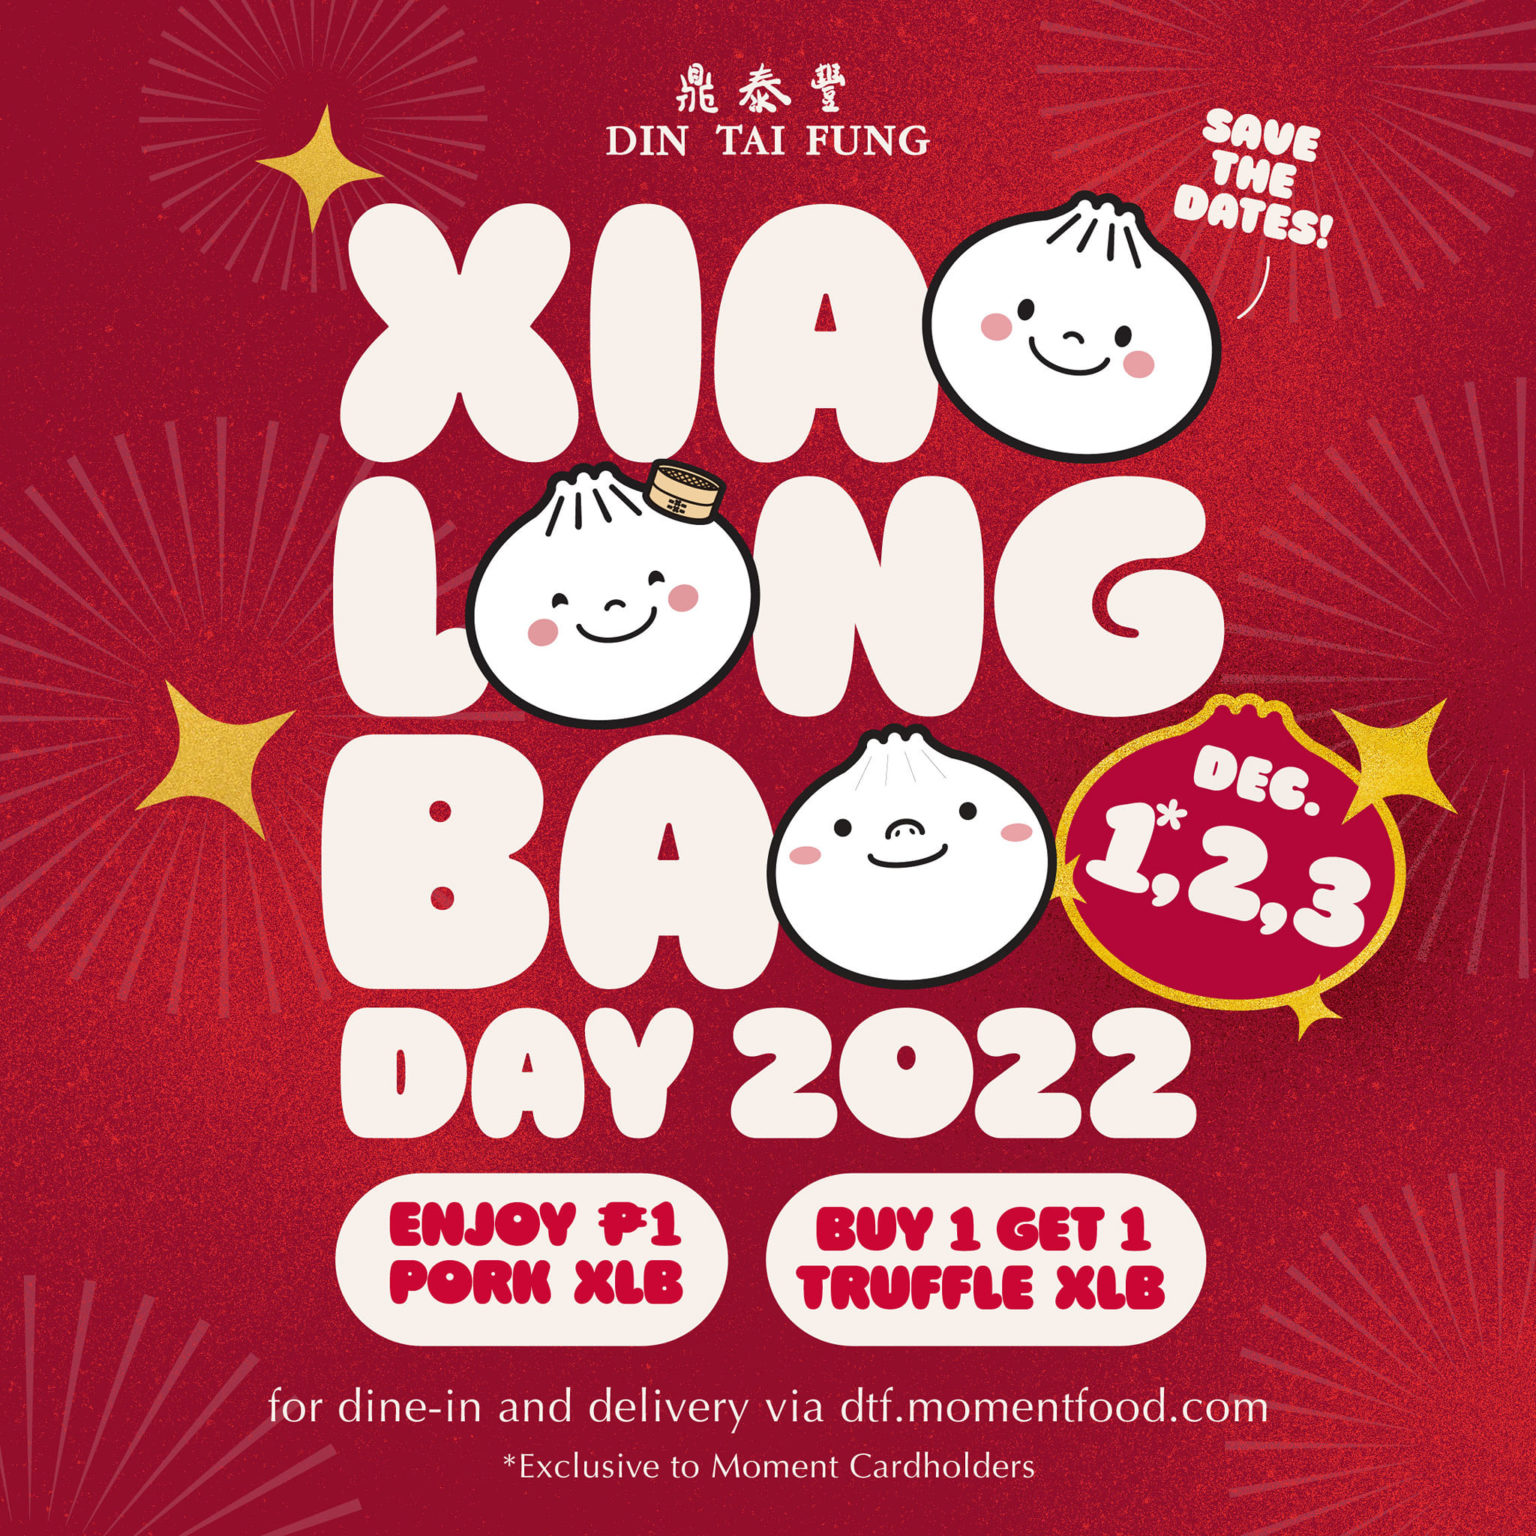 Din Tai Fung Xiao Long Bao Day 2022 Poster 1536x1536 